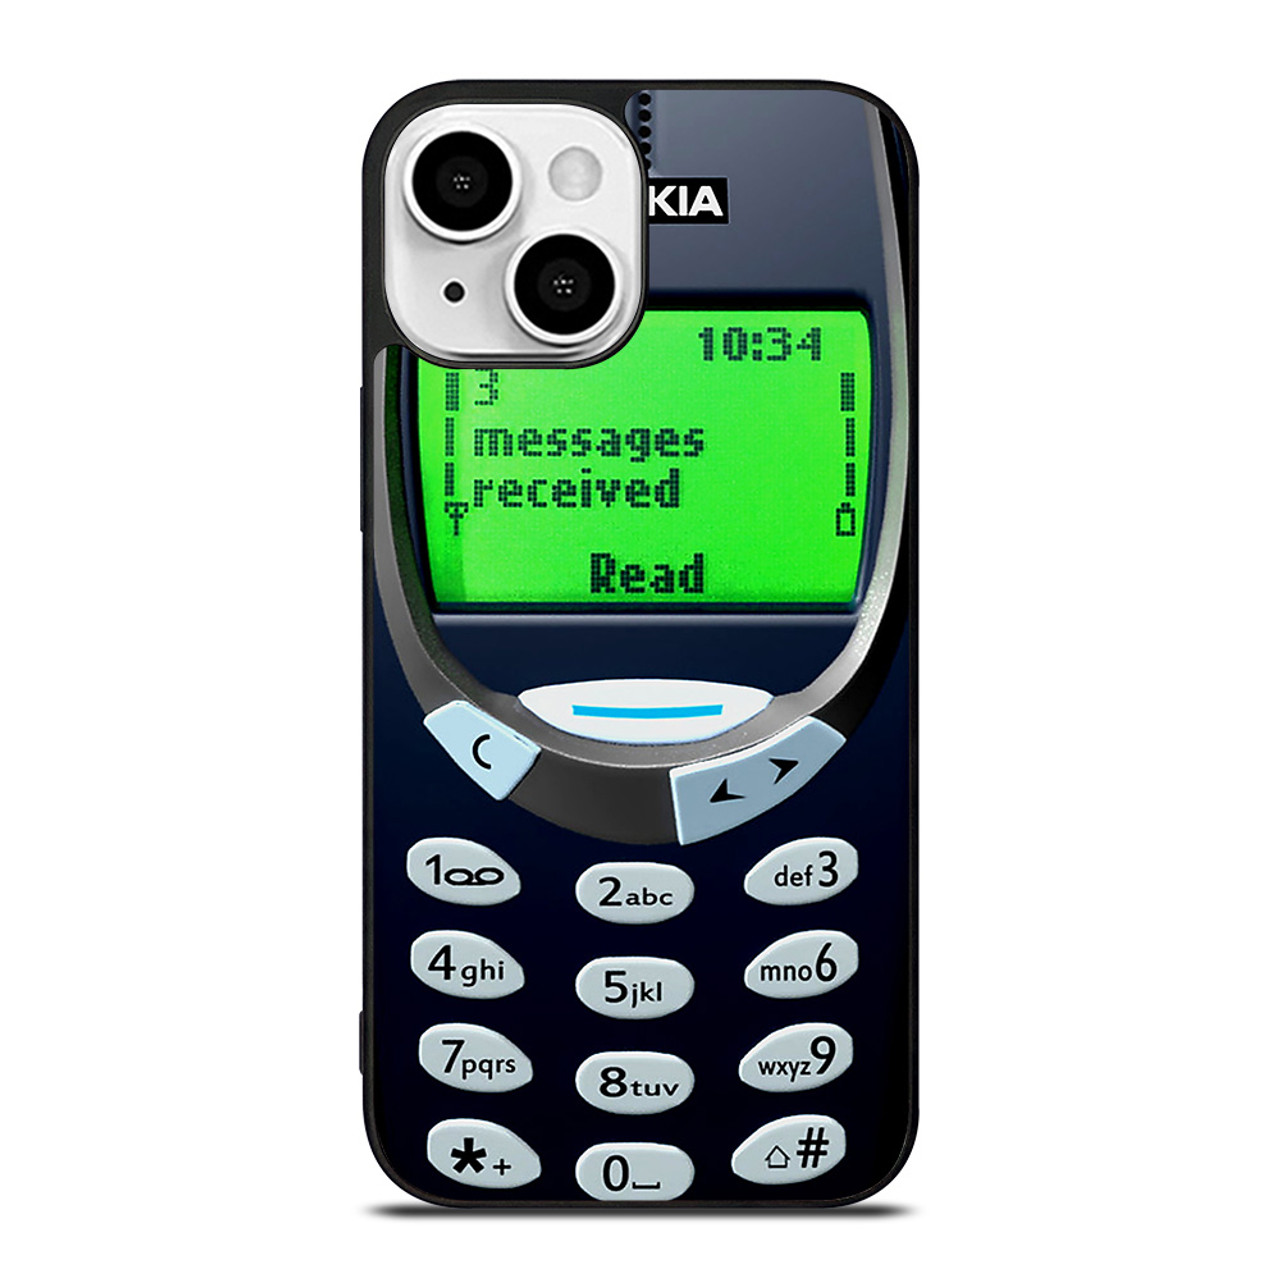 NOKIA CLASSIC PHONE 3310 iPhone 13 Mini Case Cover